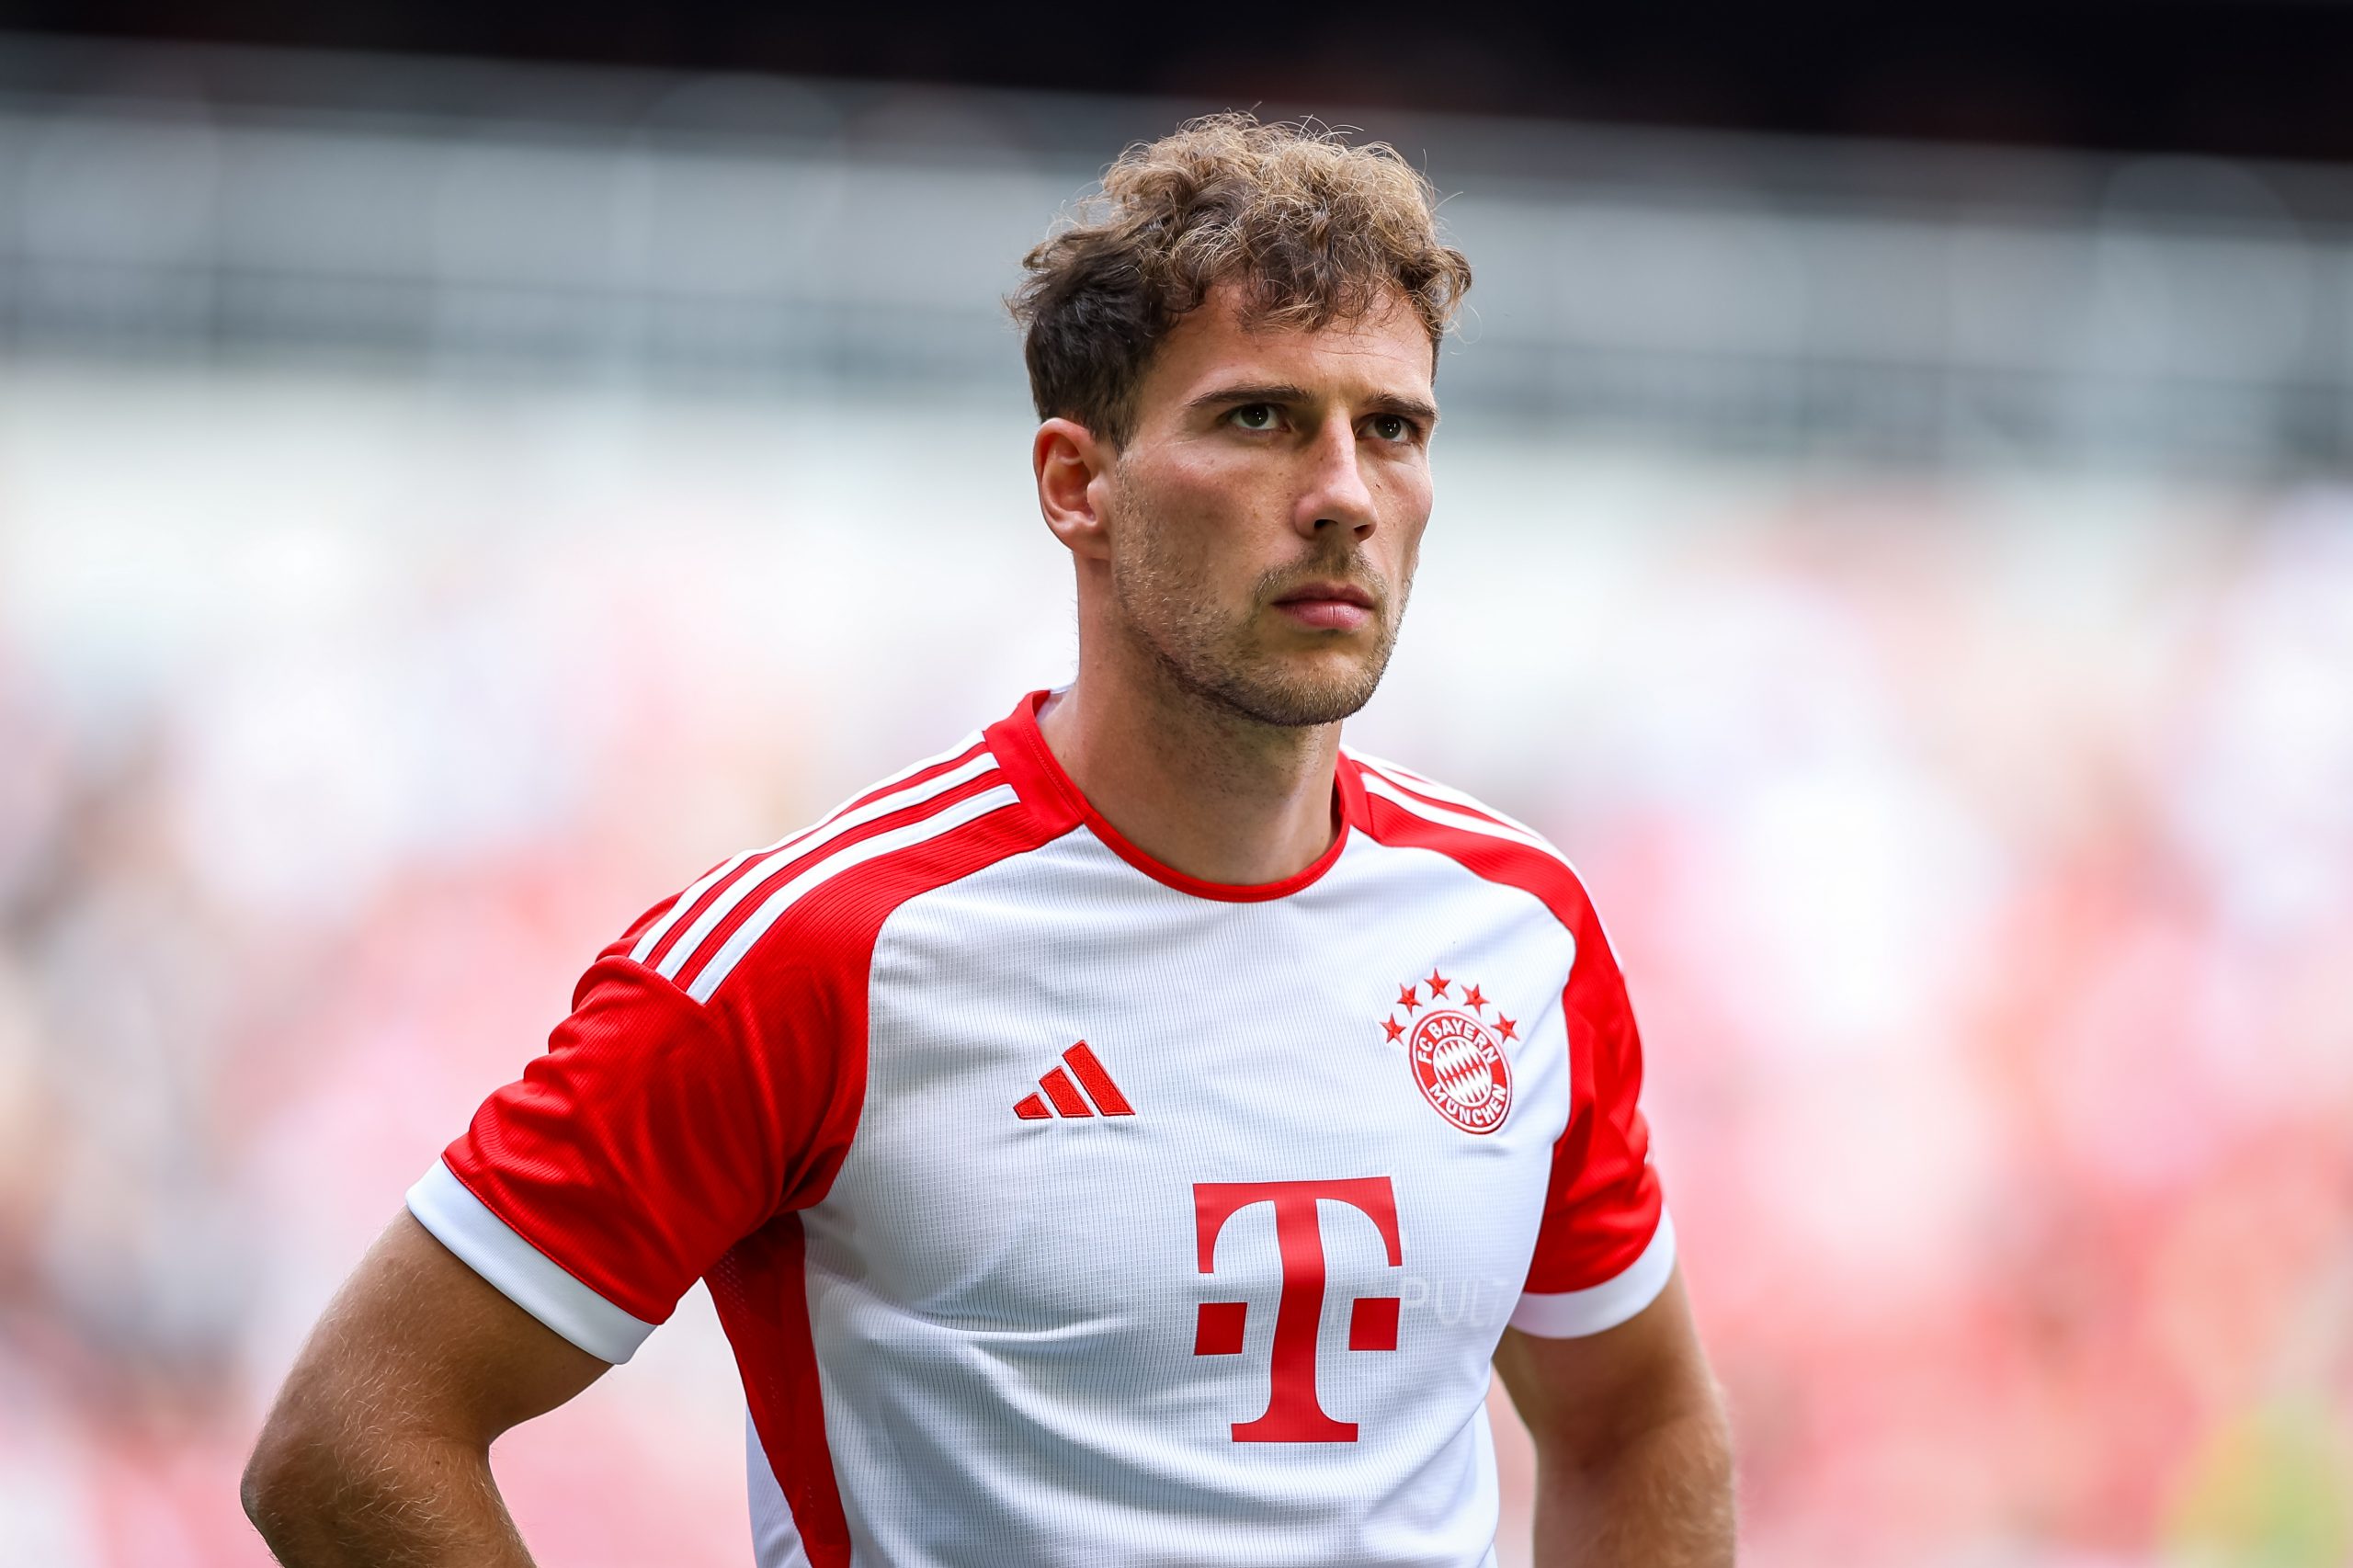 Leon Goretzka commits future at Bayern Munich amidst Manchester United interest.